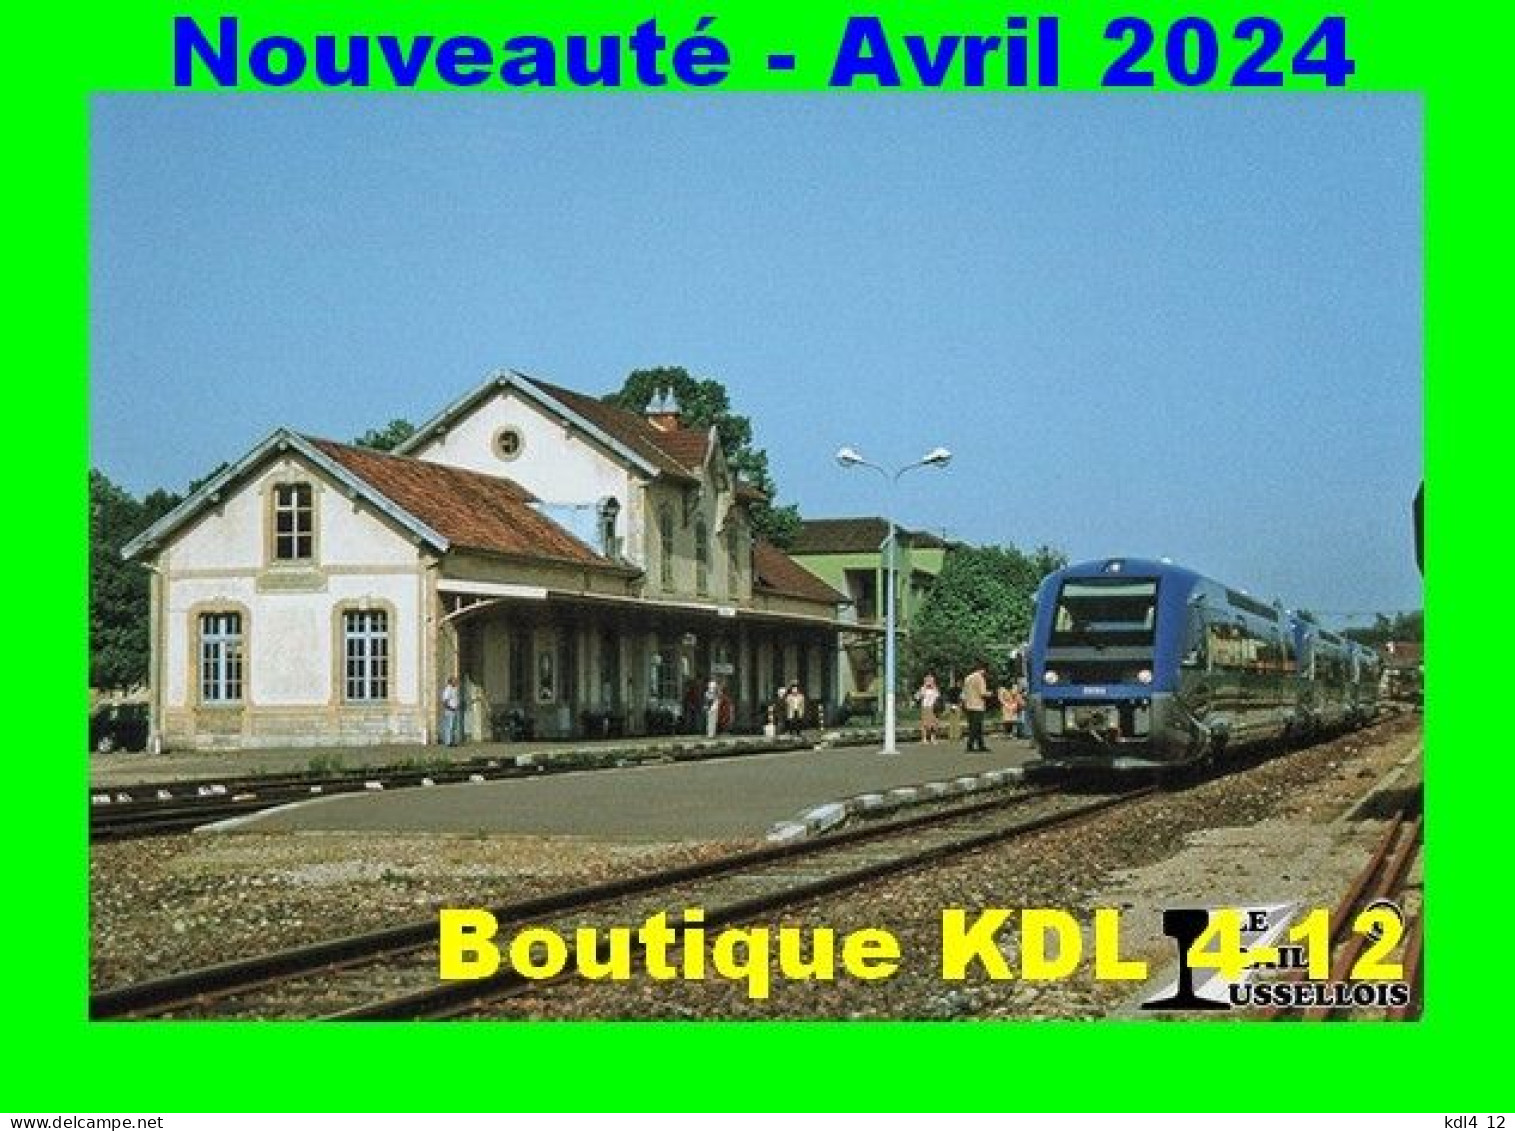 RU 2169 - Autorail X 73754 En Gare - CHAMPAGNOLE - Jura - SNCF - Estaciones Con Trenes